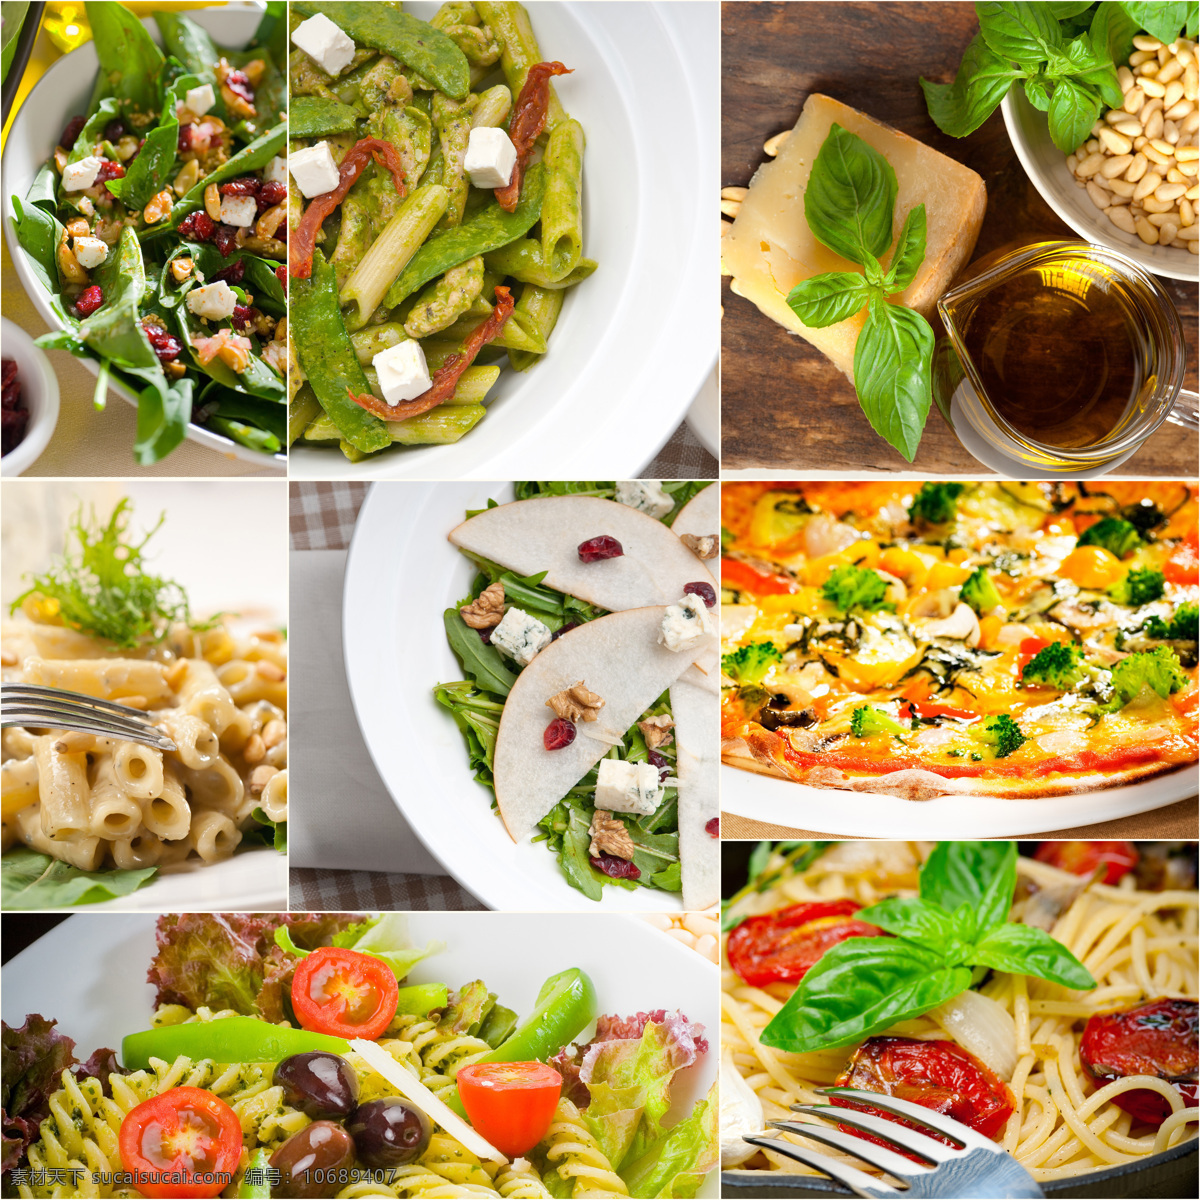 堆 美味 美食 披萨 配菜 面条 蔬菜 果蔬 美味蔬菜 水果蔬菜 餐饮美食 蔬菜图片